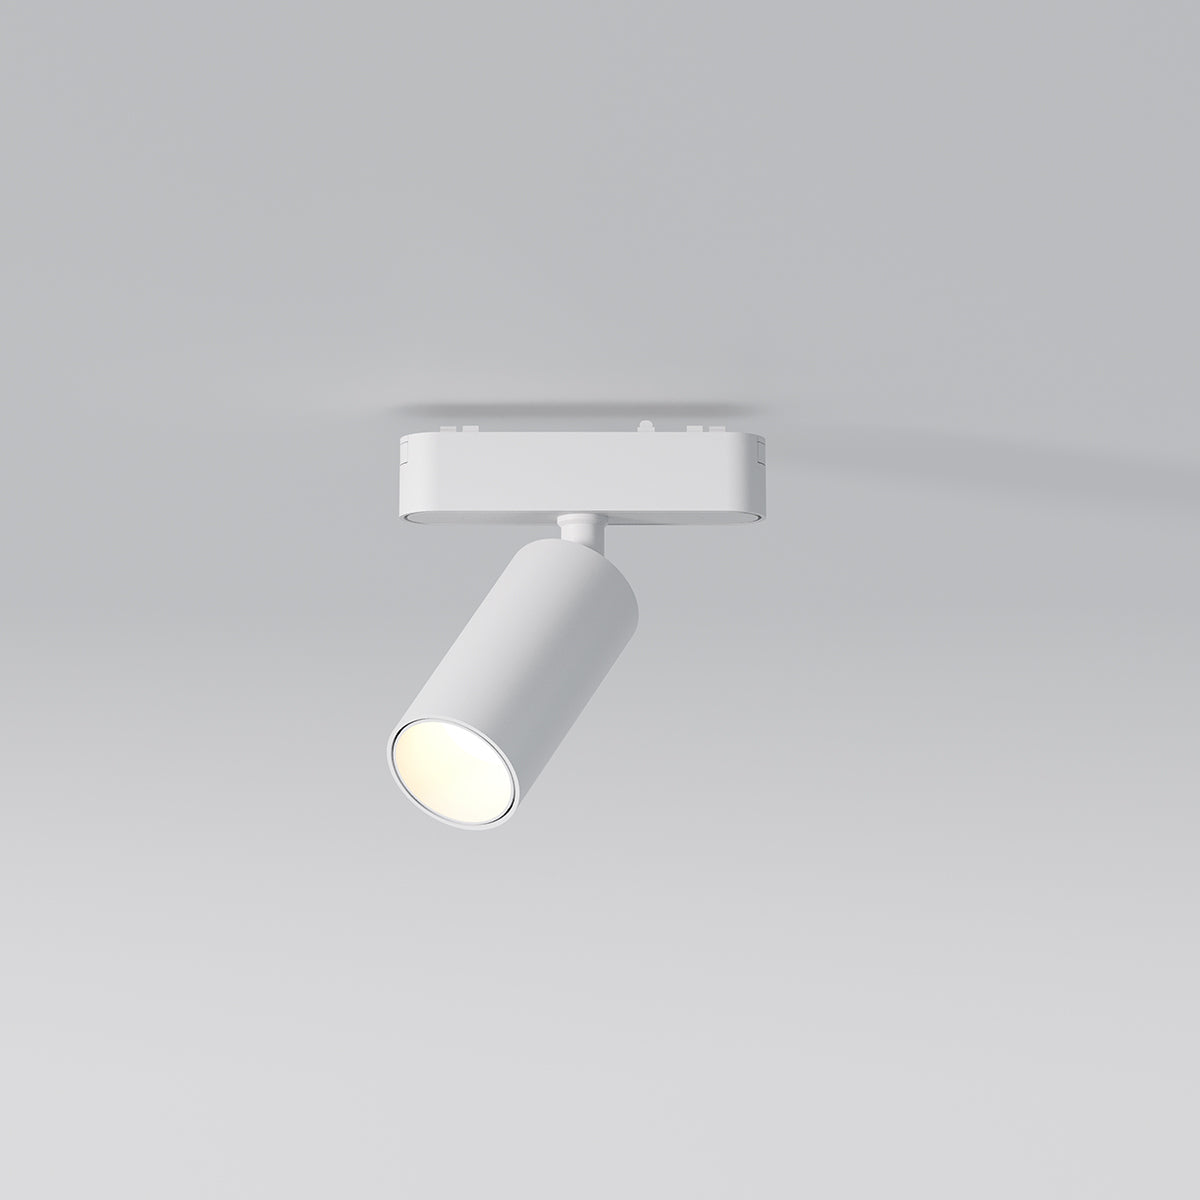 48V| 12W ספוט תאורה בודד לבן למערכת תאורה מגנטית